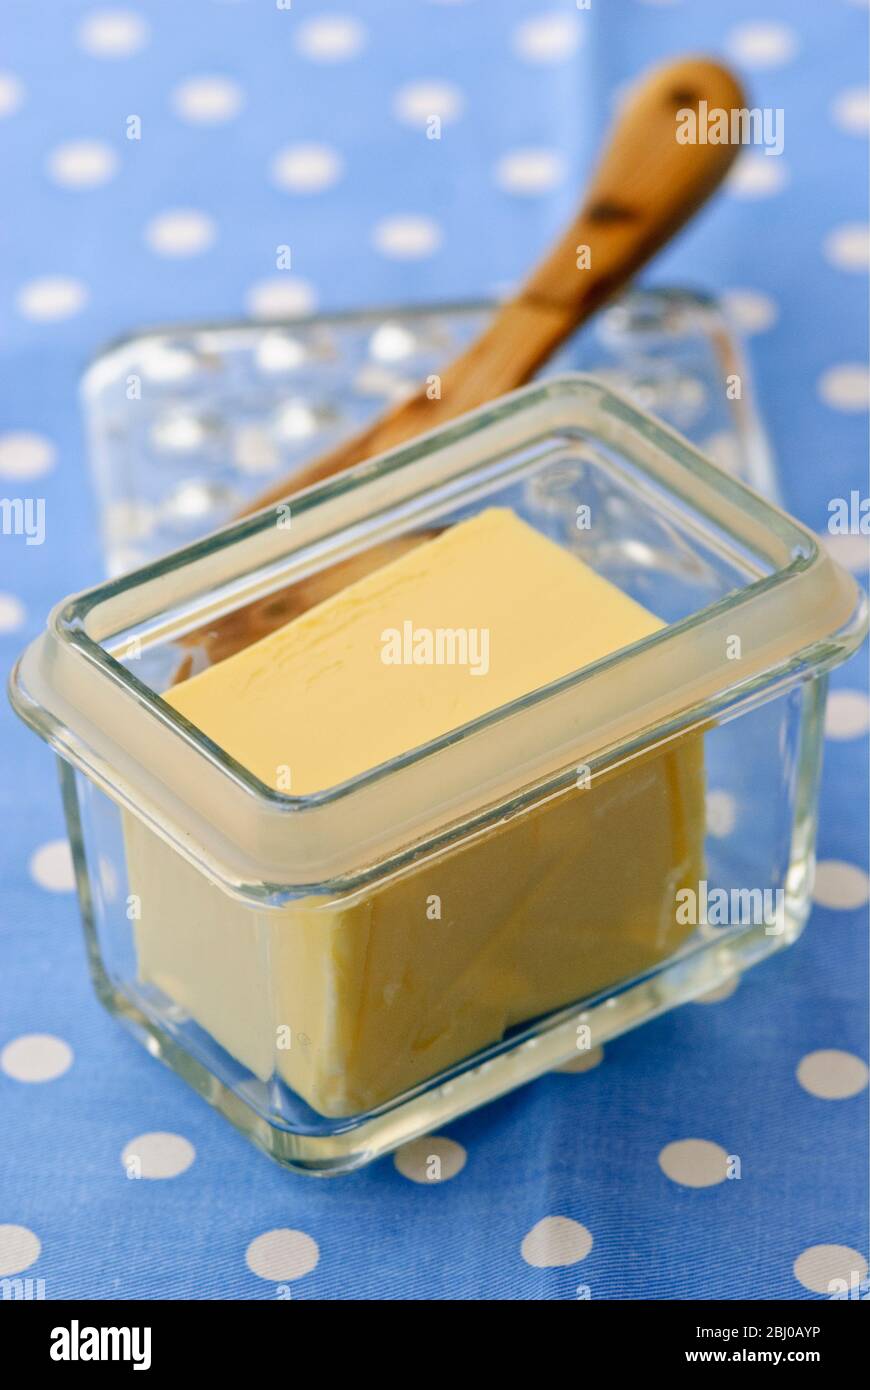 Plat à beurre de verre avec couteau à beurre sur tissu à pois bleu et blanc - Banque D'Images